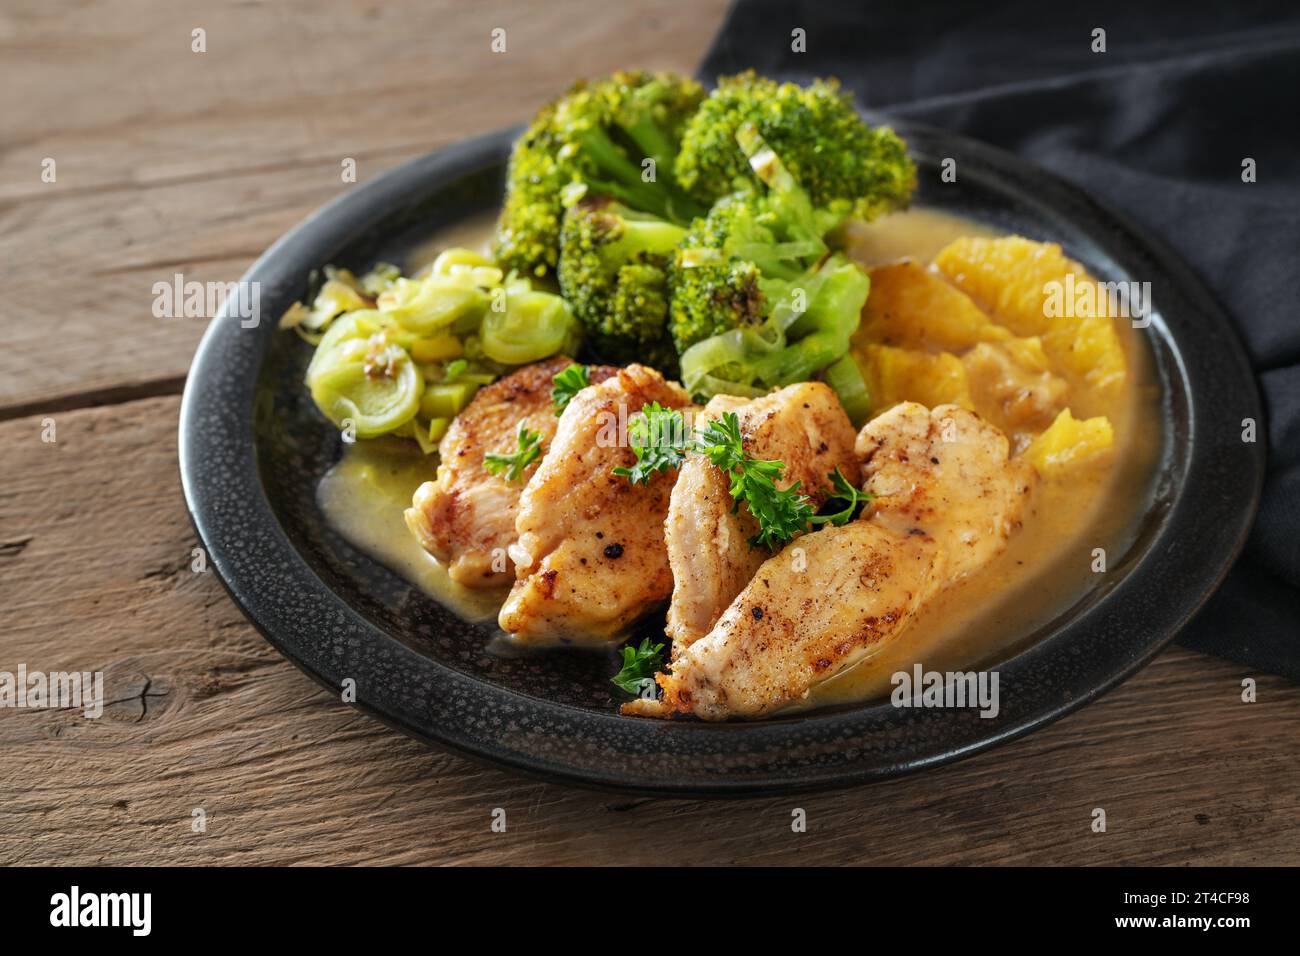 Filet de poulet en sauce orange avec légumes poireaux brocoli sur une assiette noire sur bois rustique foncé, plat de régime pauvre en glucides, espace de copie, foyer sélectionné, nar Banque D'Images